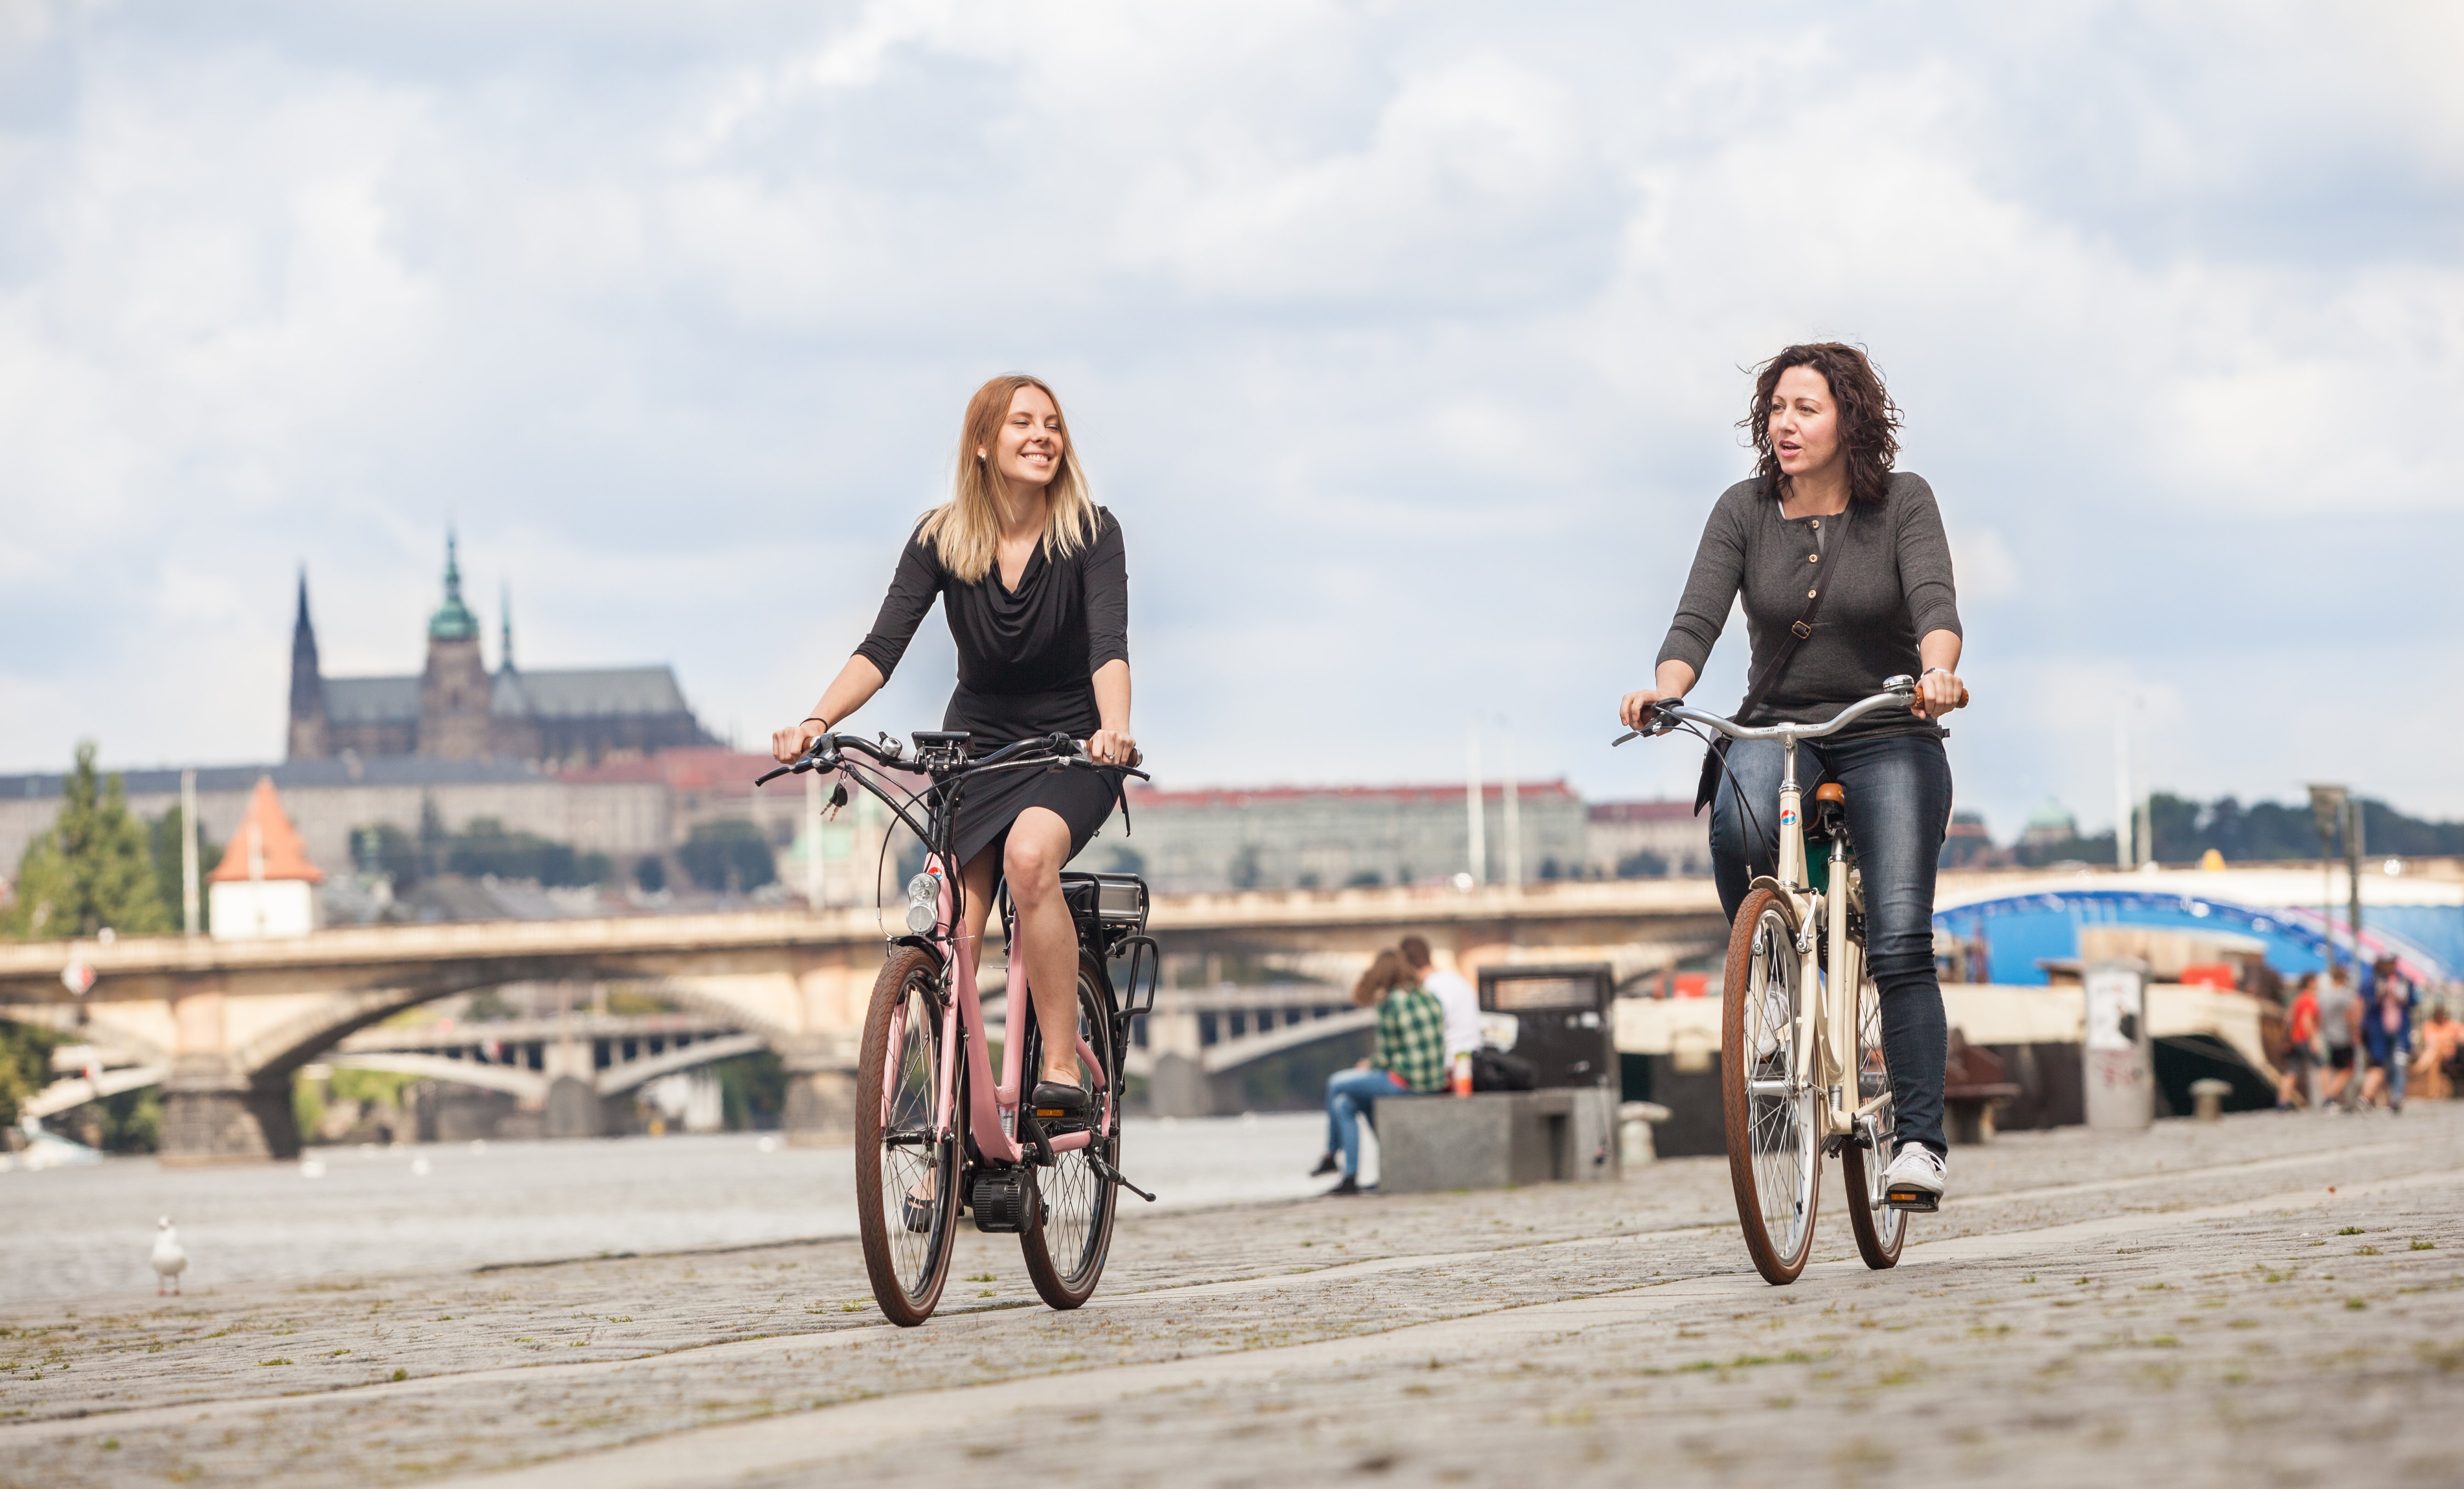 Cyklistika je v Praze na vzestupu a v dalších letech tomu pravděpodobně nebude jinak | zdroj: ČSP